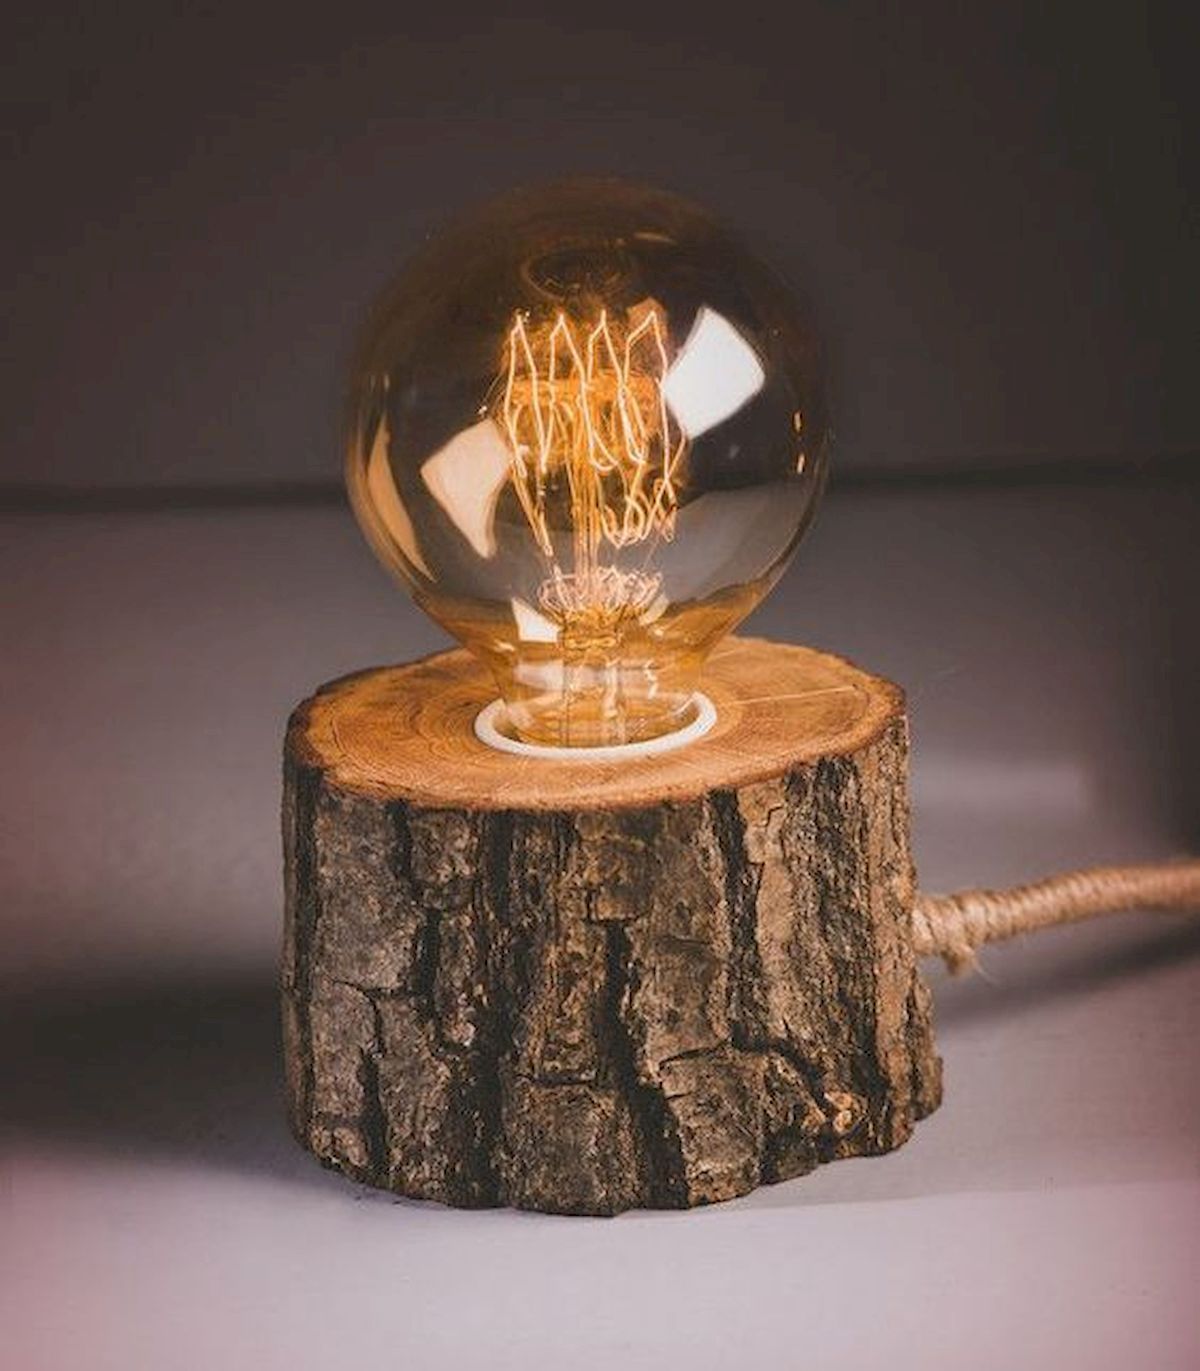 16 diy Lamp wood ideas